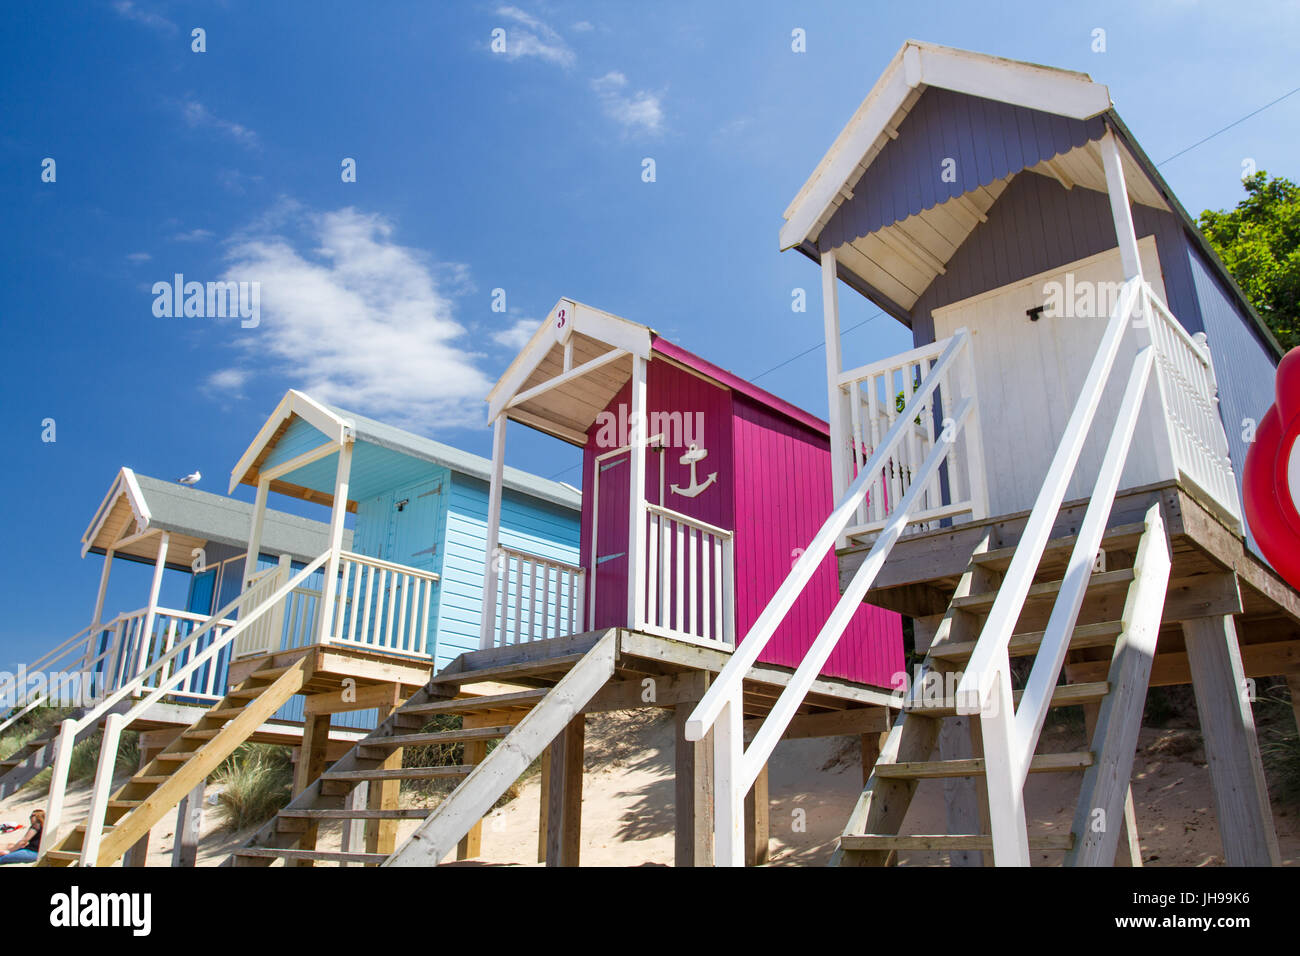 Reihen von bunten Strandhütten auf Stelzen am sonnigen, sandigen Strand von Wells nächsten The Sea in Norfolk, England ist ein beliebtes touristisches Strand in England. Stockfoto